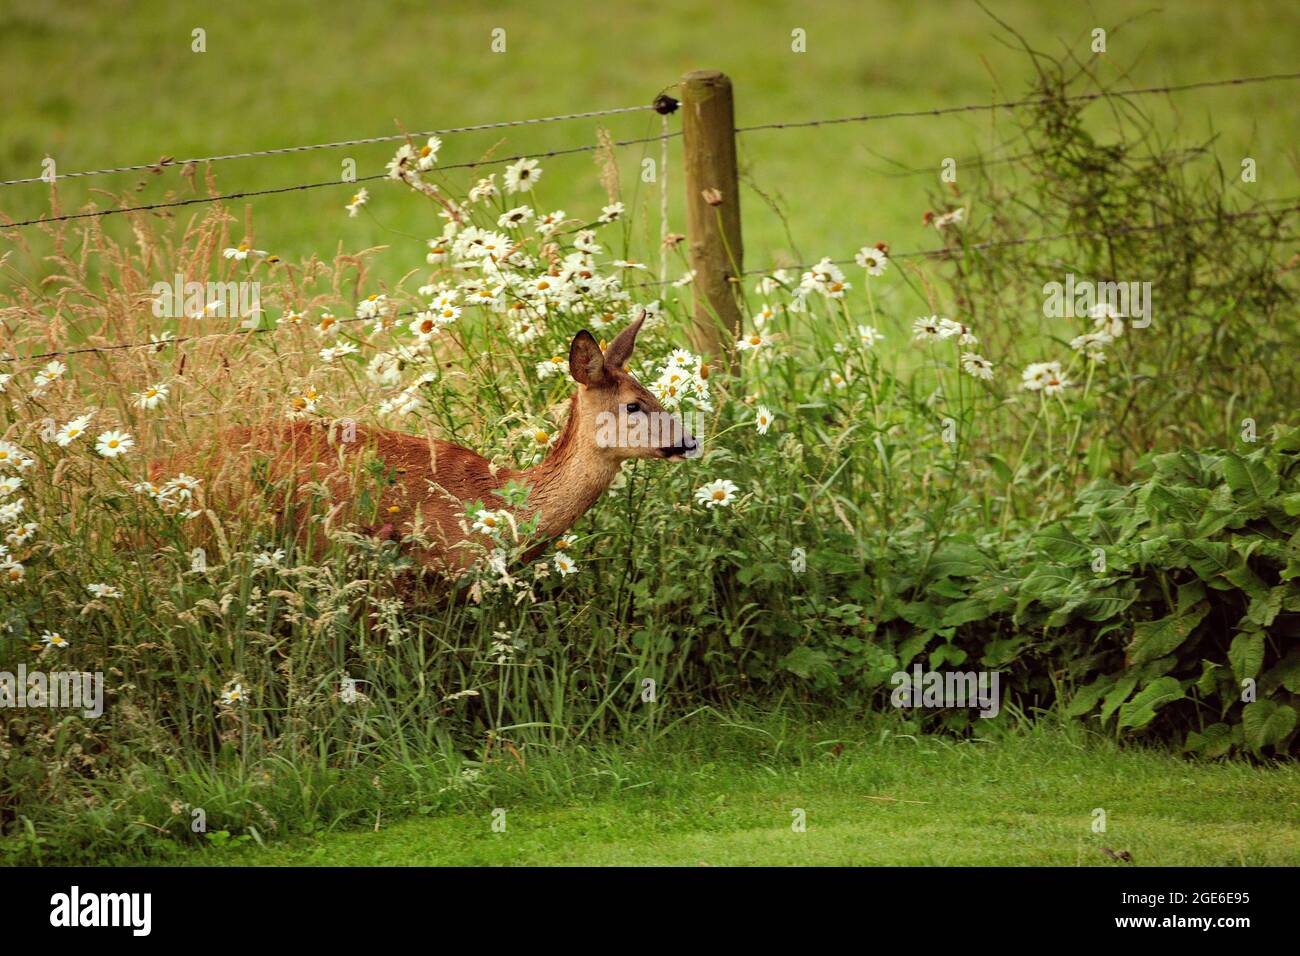 Países Bajos, Õs-Graveland, finca rural Hilverbeek. Ciervo roe, hembra, entrando al jardín. Foto de stock